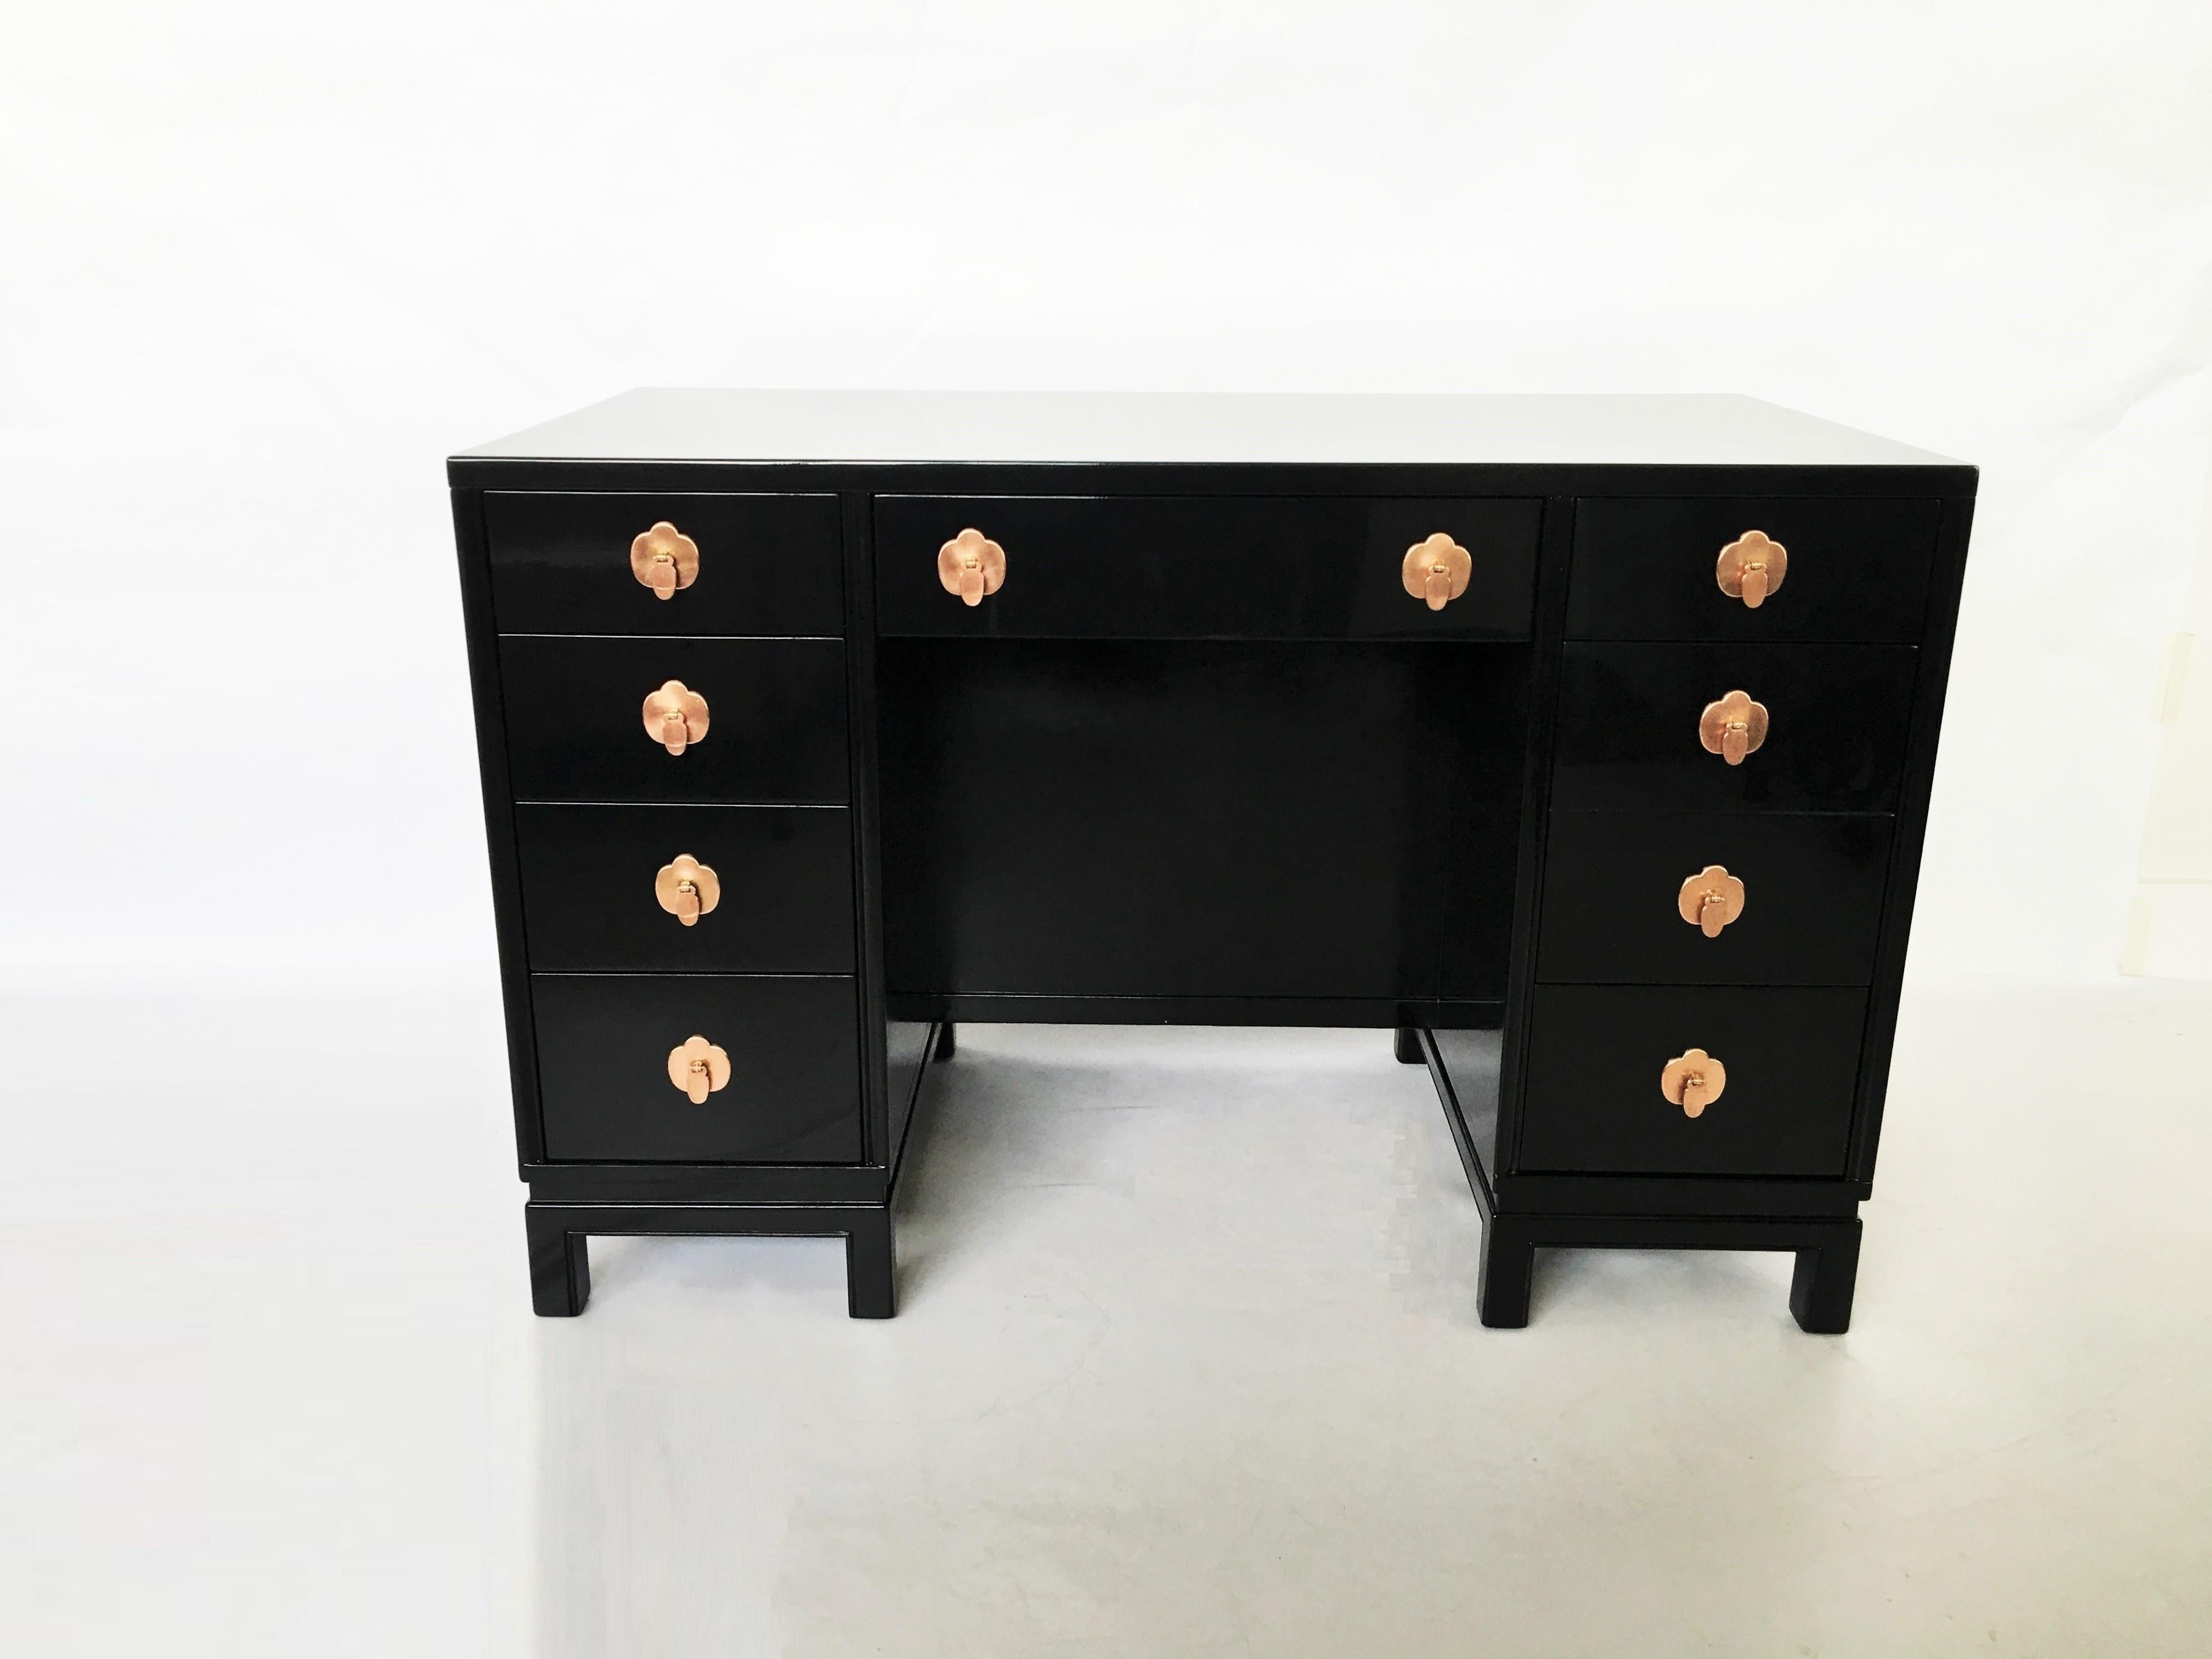 Midcentury Black Lacquered Desk By Landstorm Furniture For Sale At